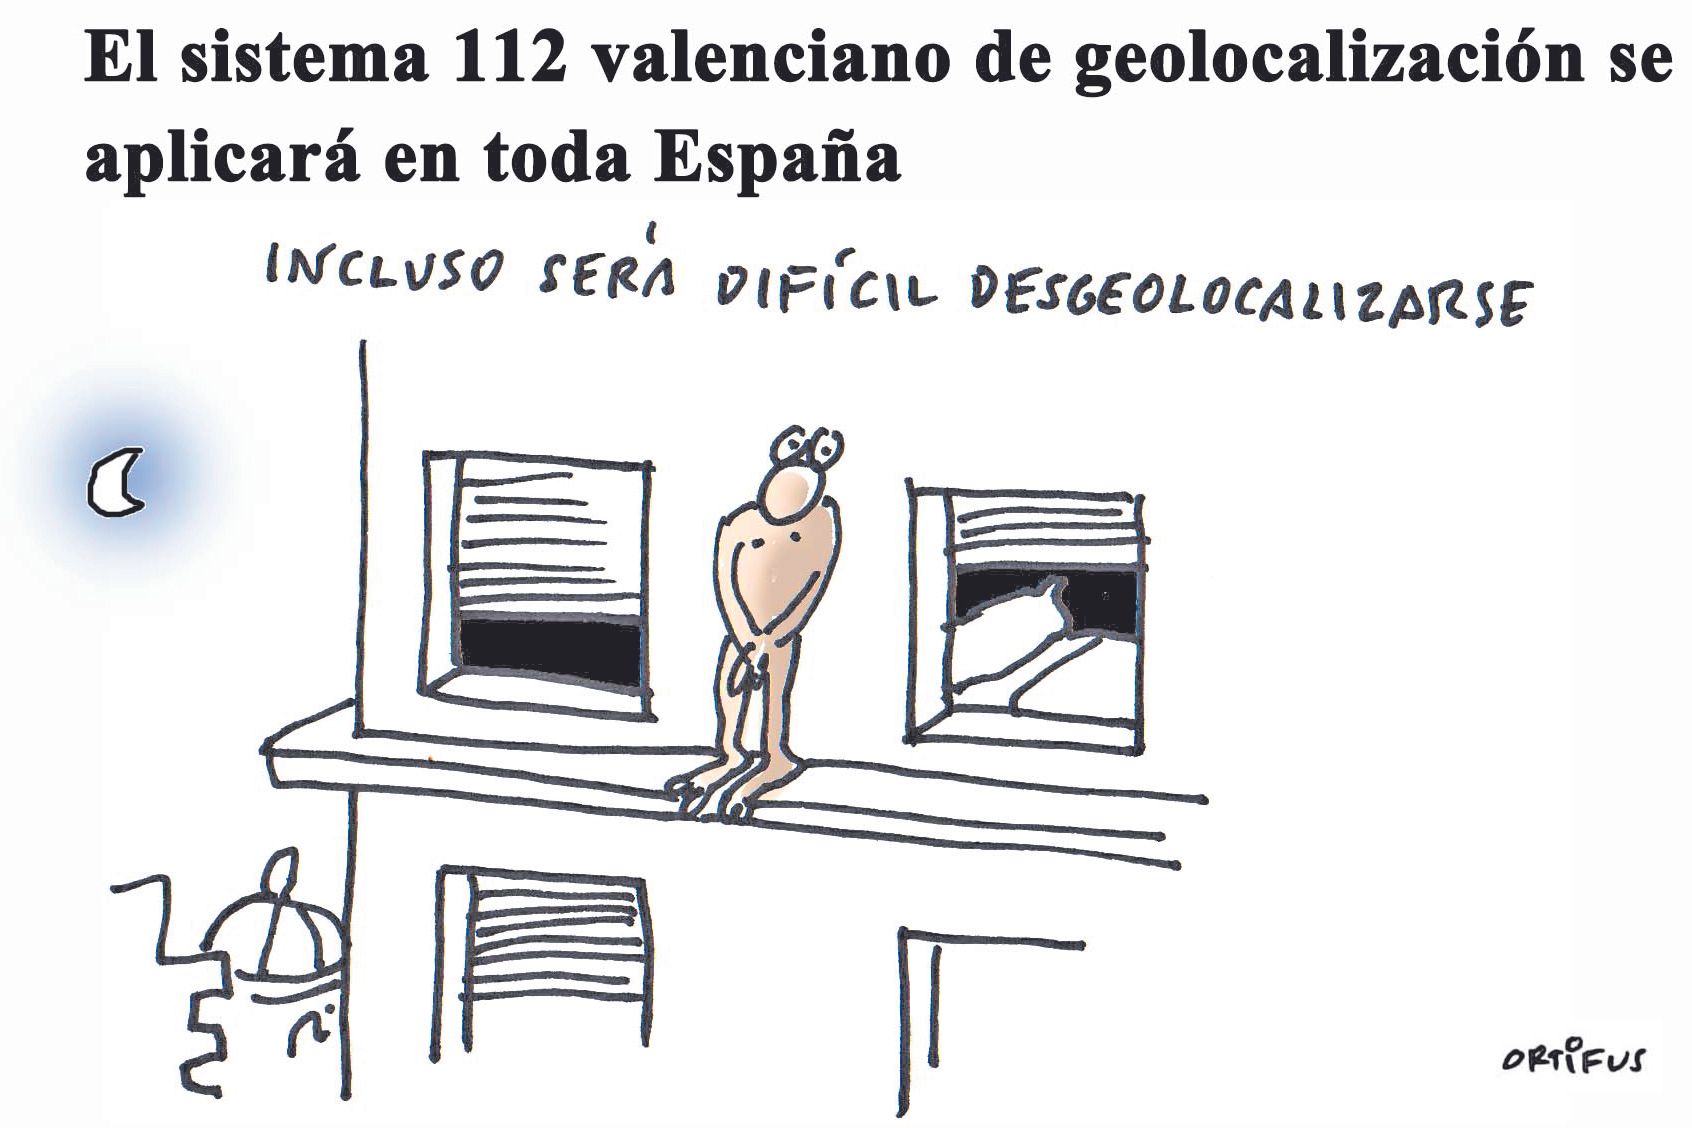 El sistema 112 valenciano de geolocalización se aplicará en toda España